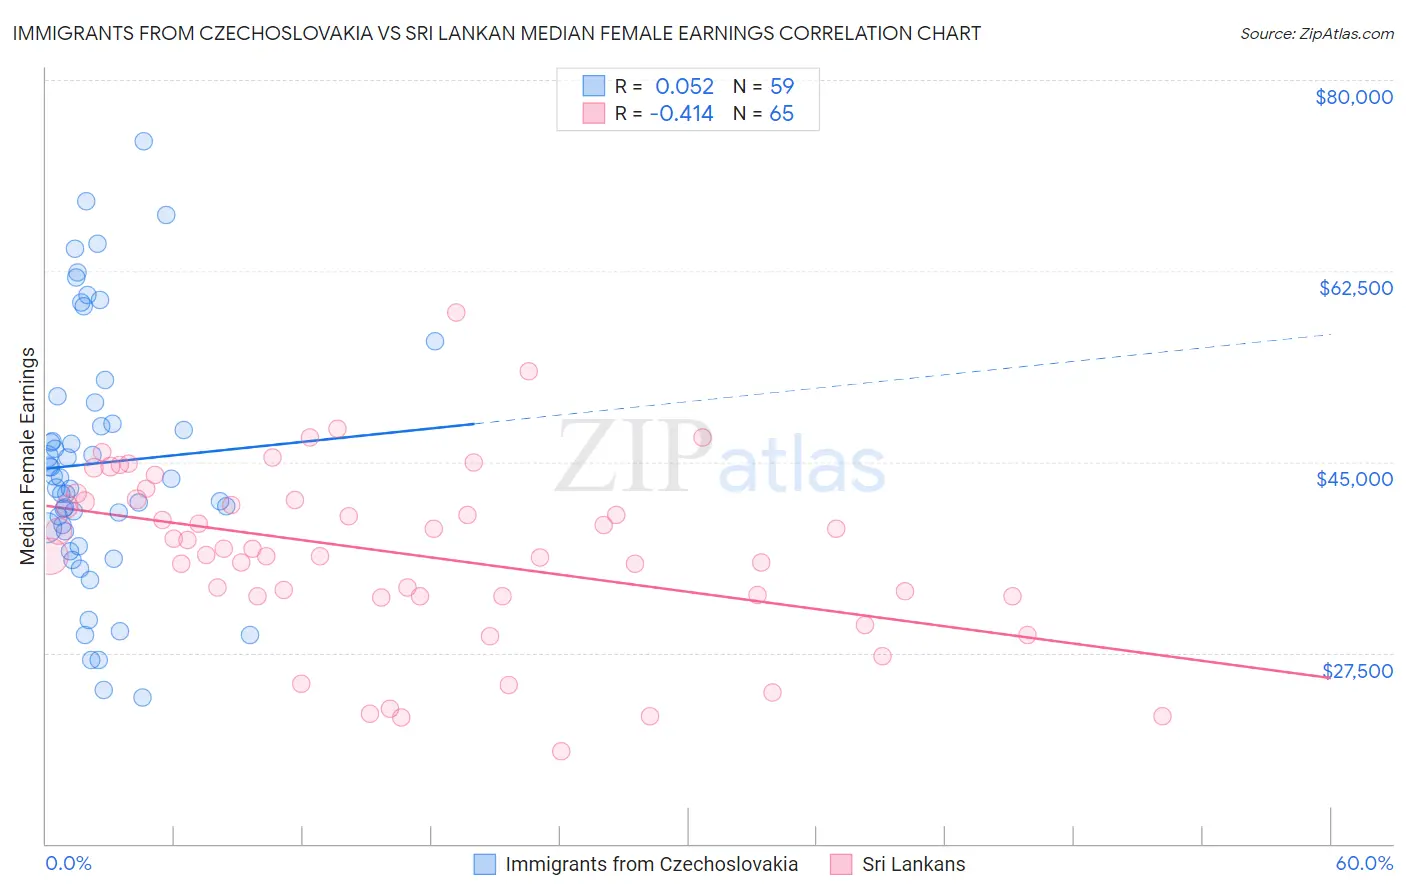 Immigrants from Czechoslovakia vs Sri Lankan Median Female Earnings